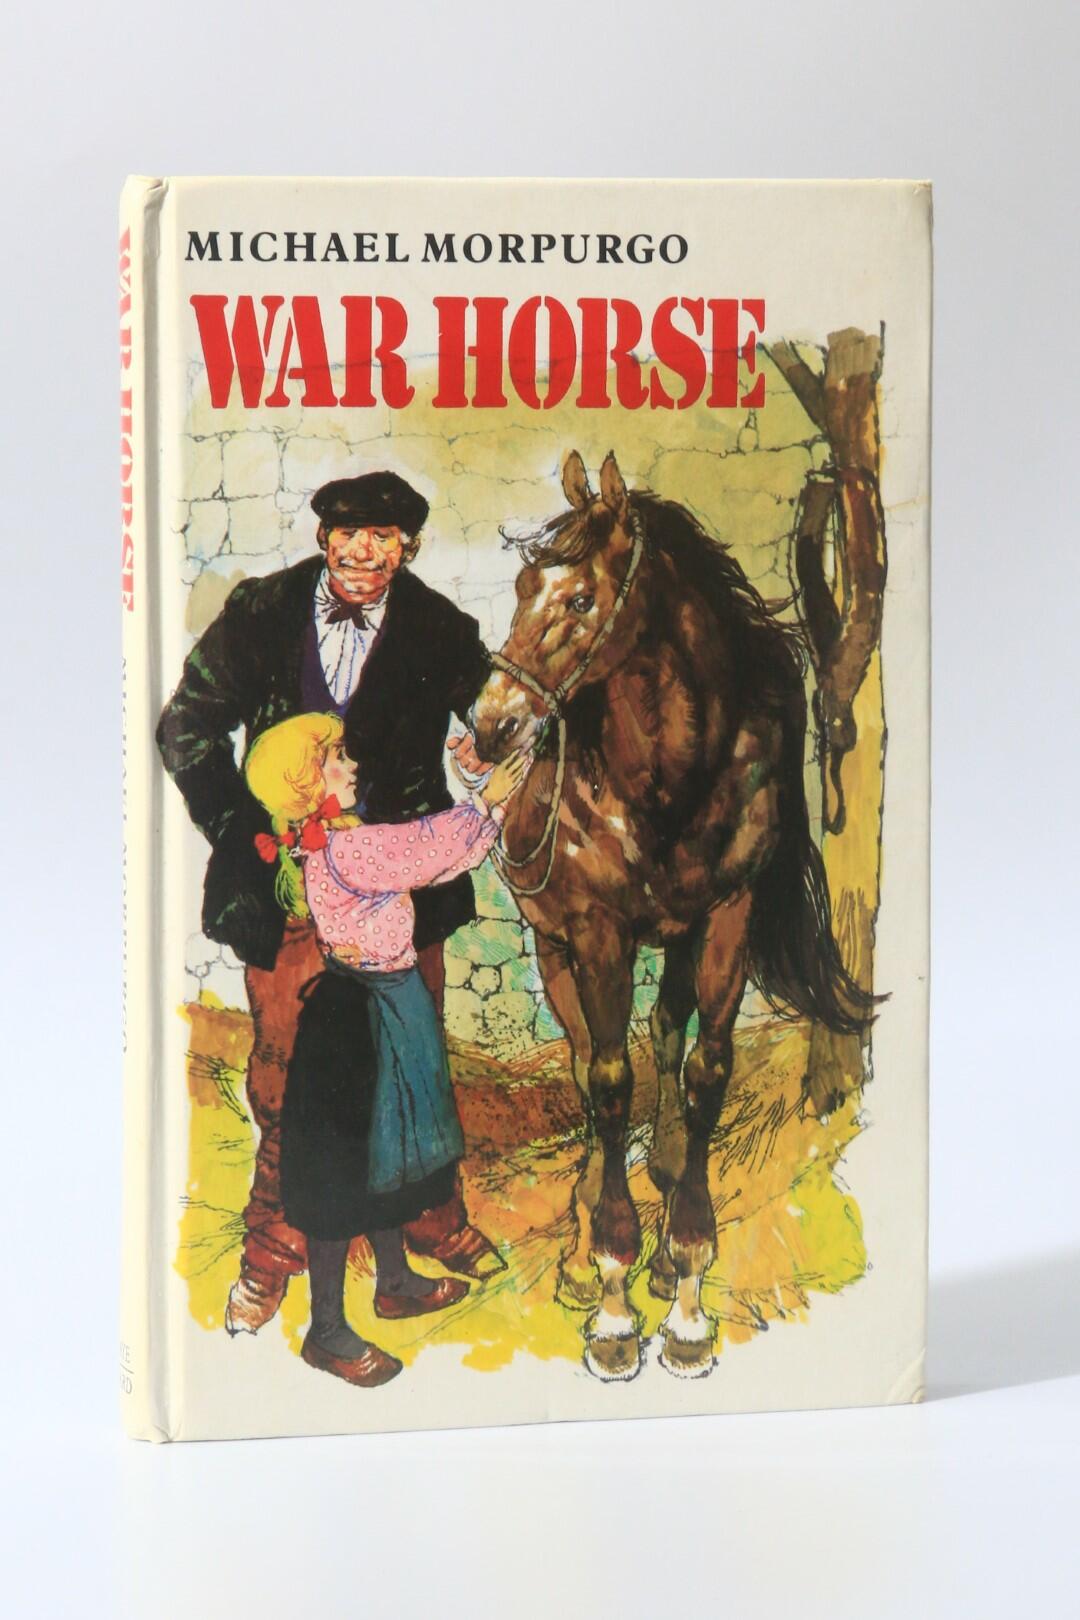 Michael Morpurgo - War Horse - Kaye Ward, 1982, First Edition.